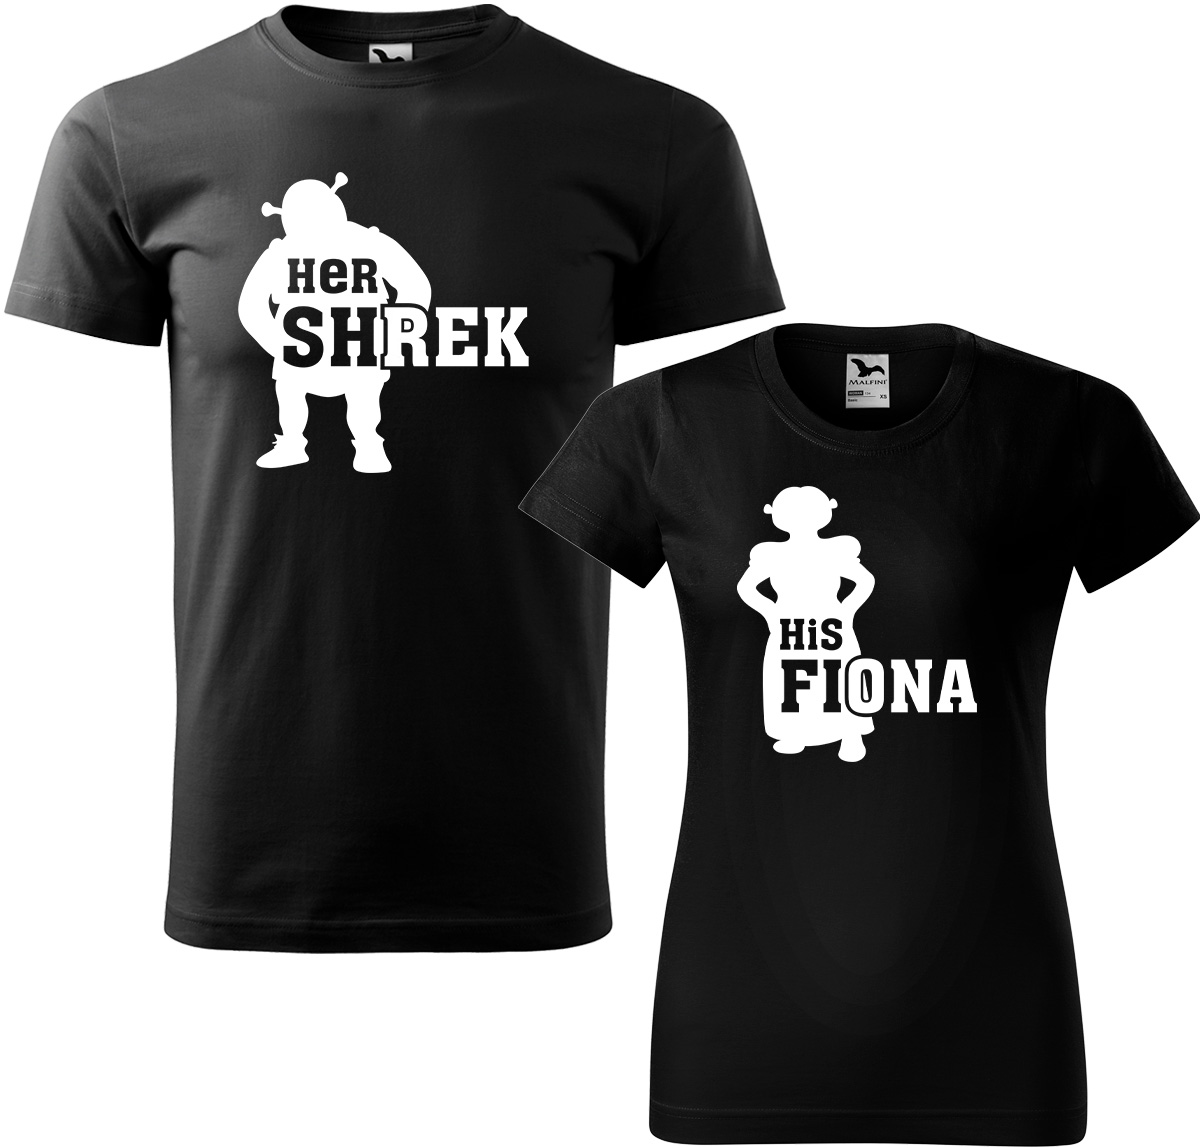 Trička pro páry - Shrek a Fiona Barva: Černá (01), Velikost dámské tričko: M, Velikost pánské tričko: L